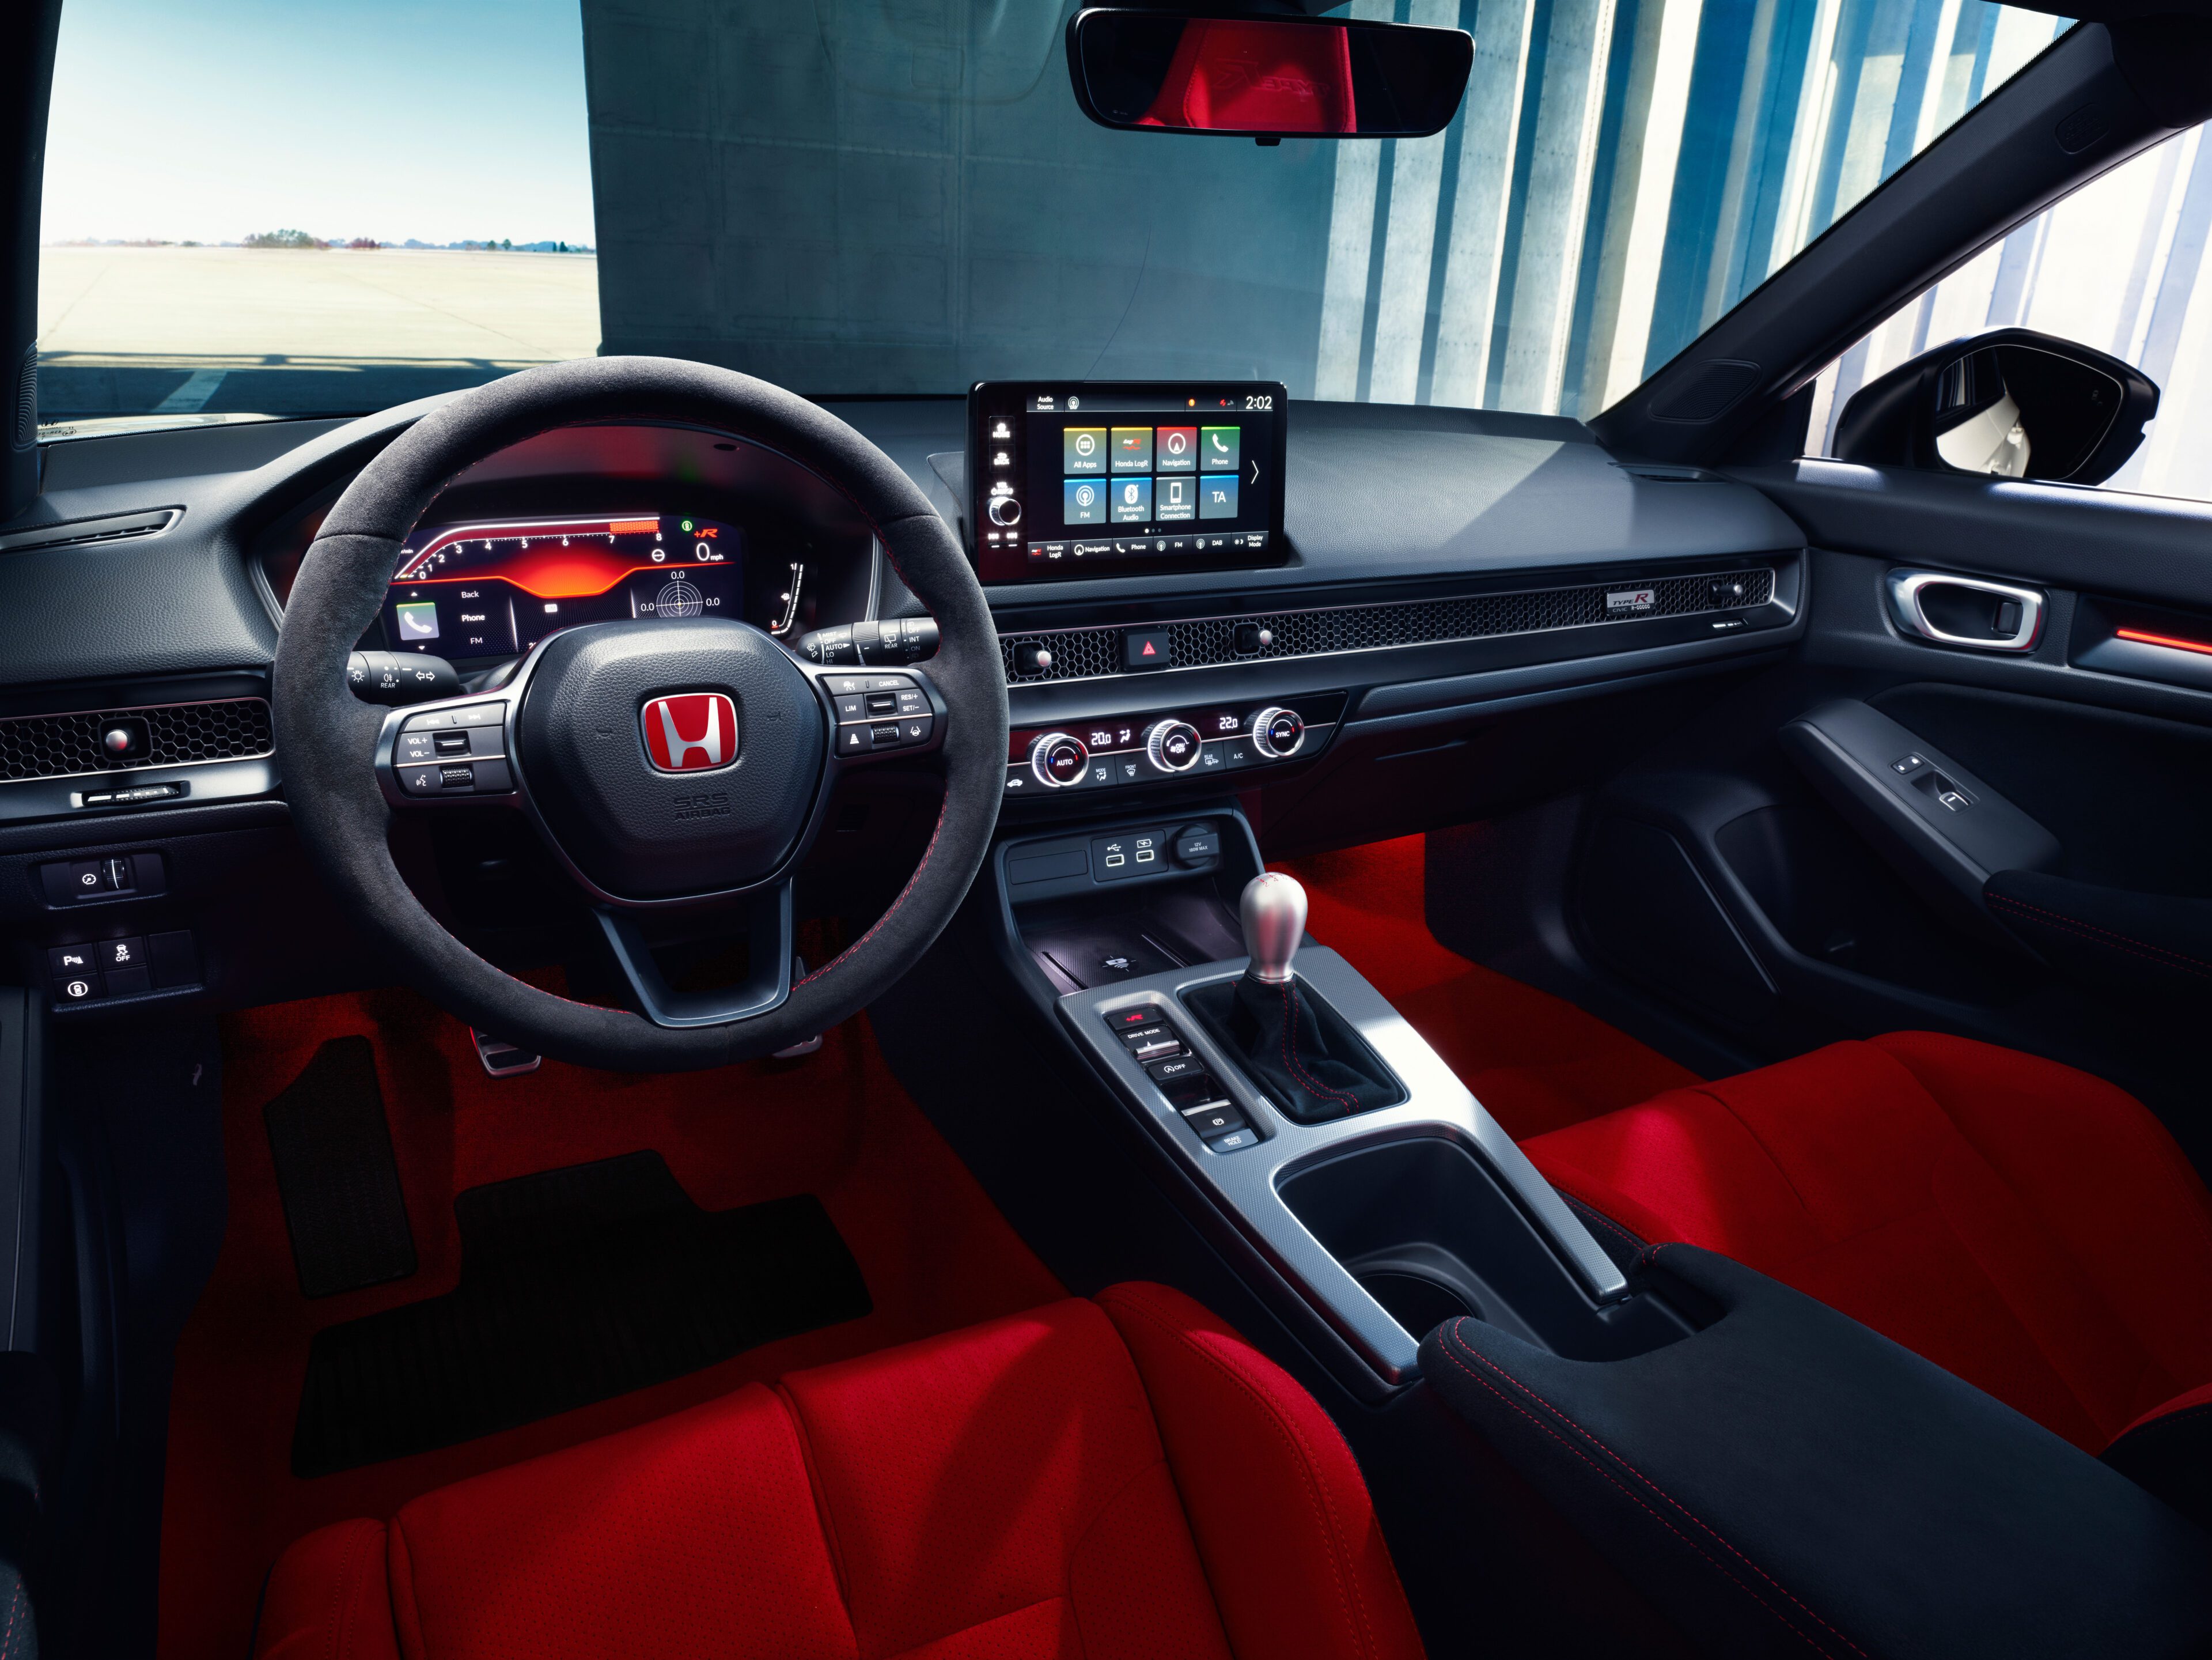 In het interieur van de nieuwe Type R wordt elke rit een buitengewone ervaring dankzij het dynamische dashboarddesign, het 10,2" multi-infodisplay en het 9" Honda CONNECT infotainmentsysteem met smartphone connectiviteit.